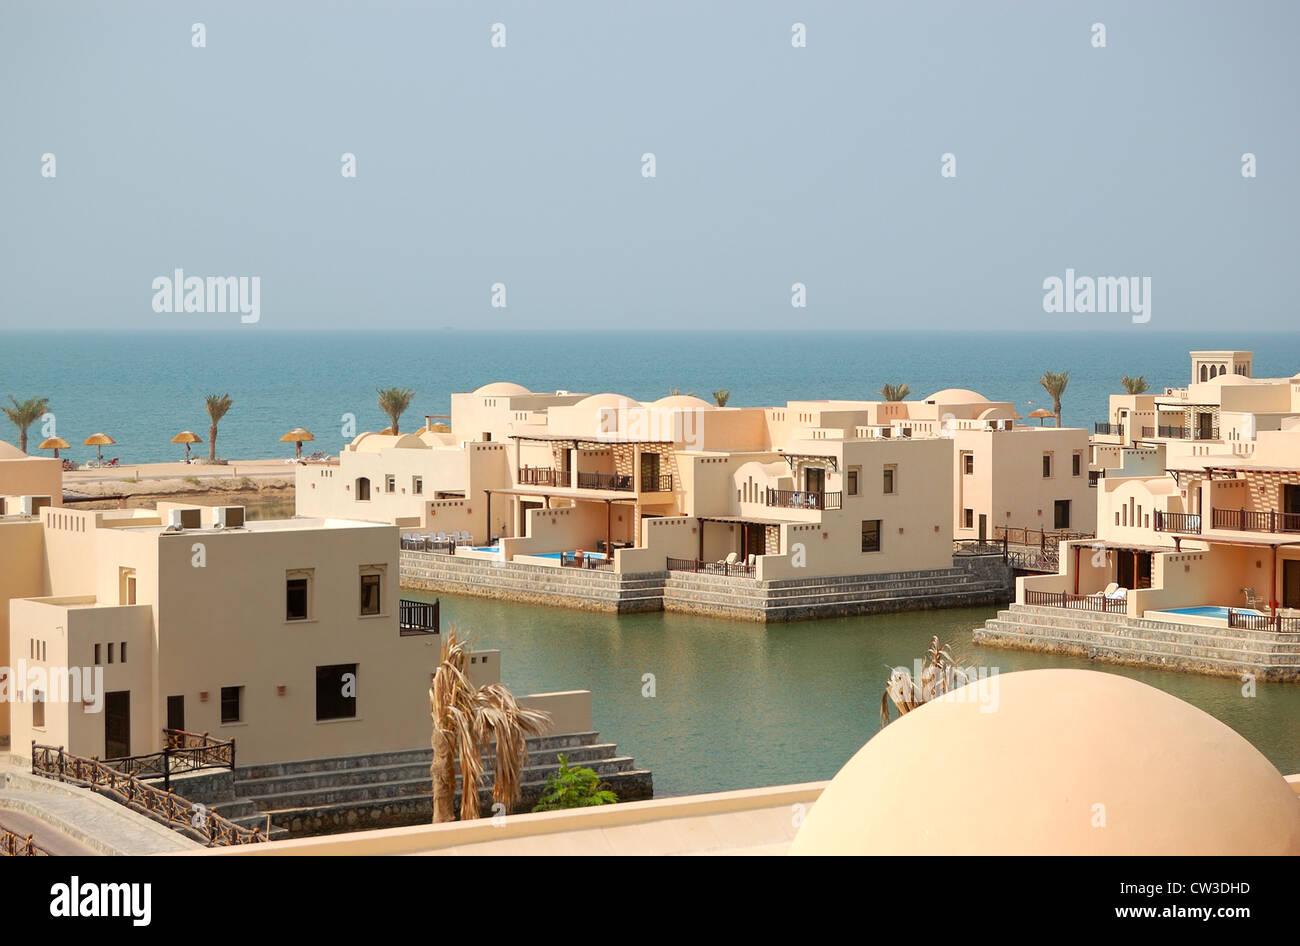 Las villas en el hotel de lujo, Ras Al Khaimah, UAE Foto de stock